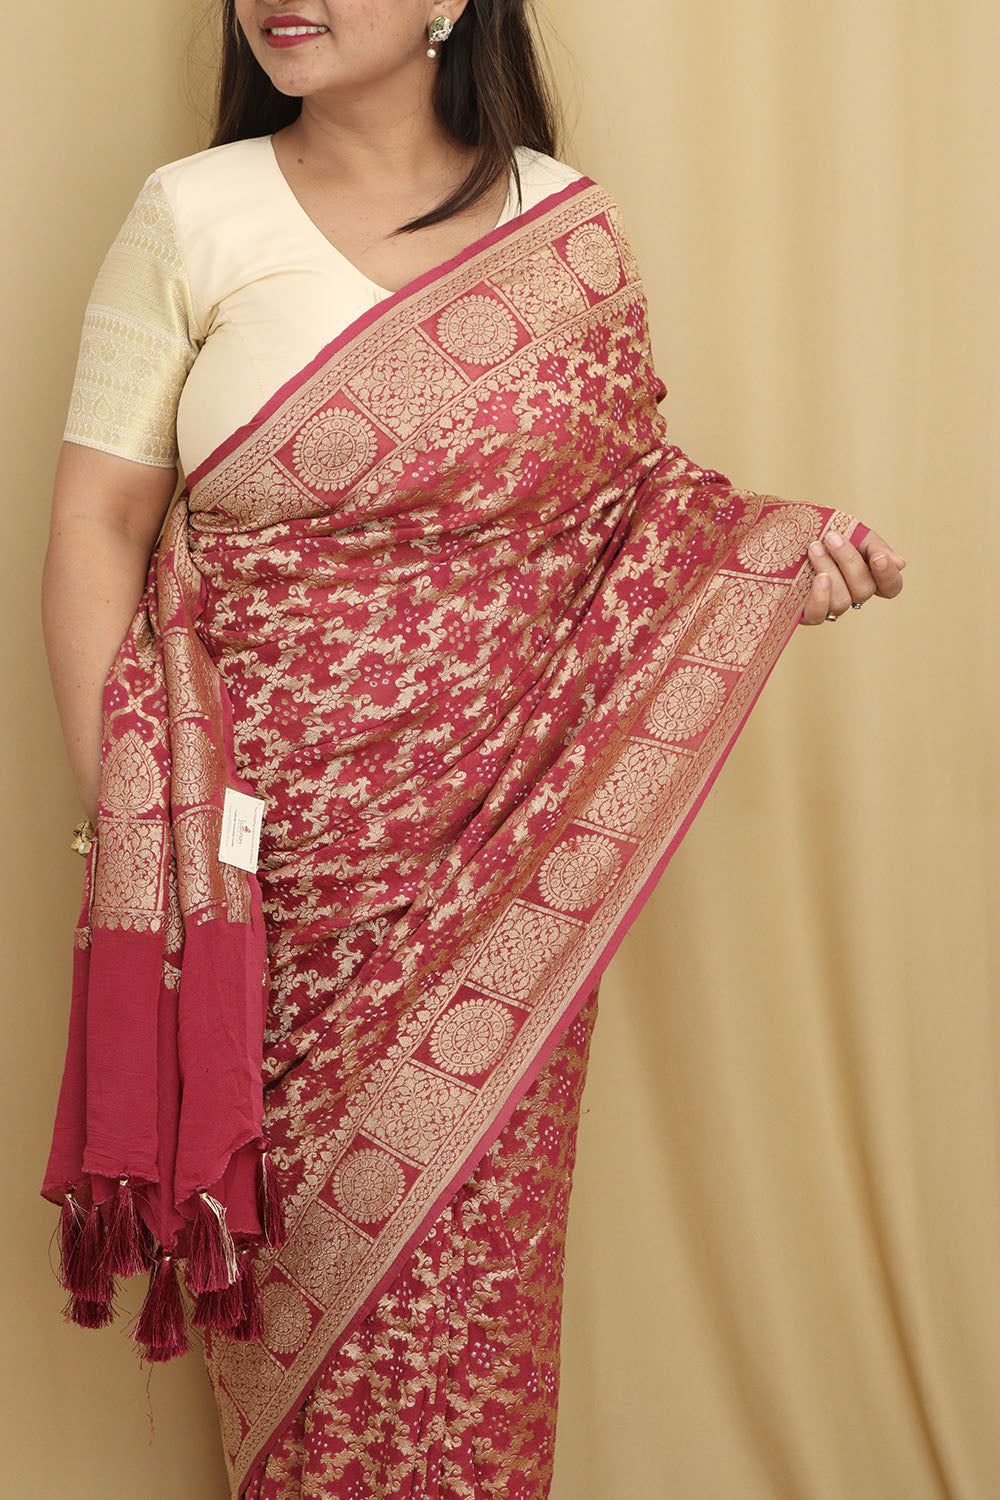 Stunning Pink Banarasi Bandhani Georgette Saree